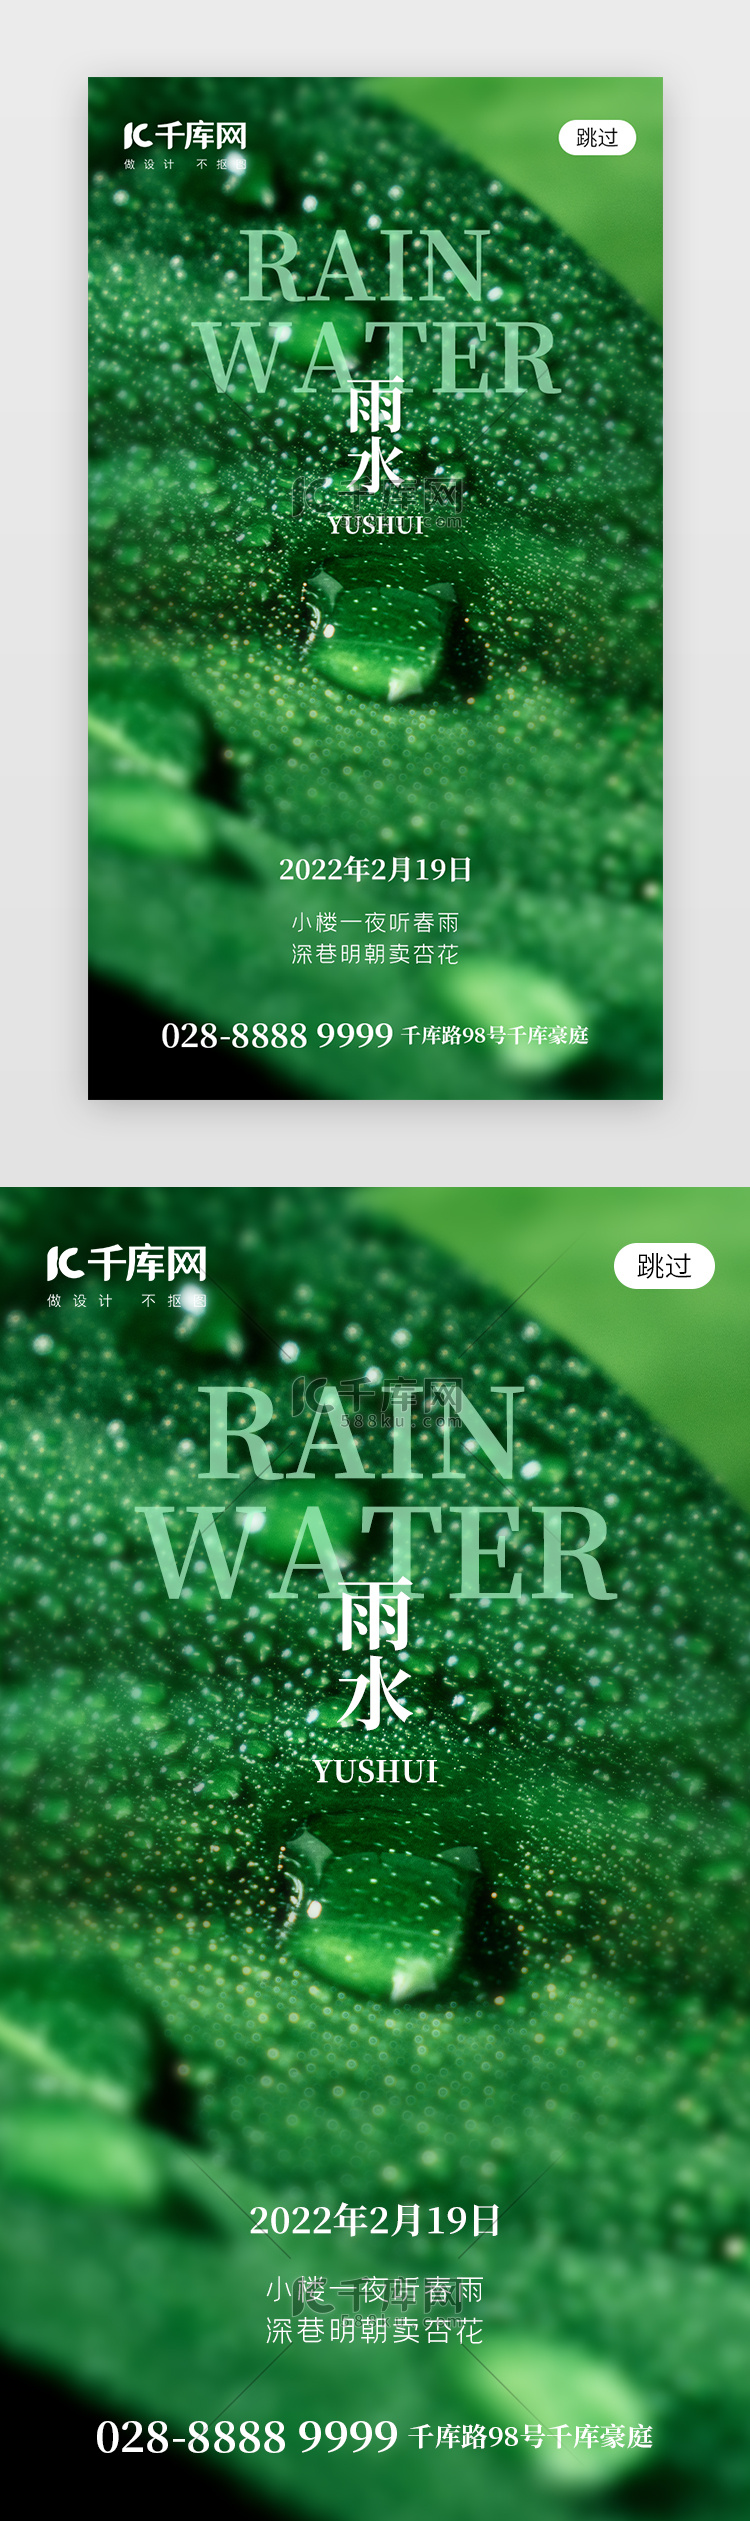 二十四节气雨水app闪屏创意绿色水滴